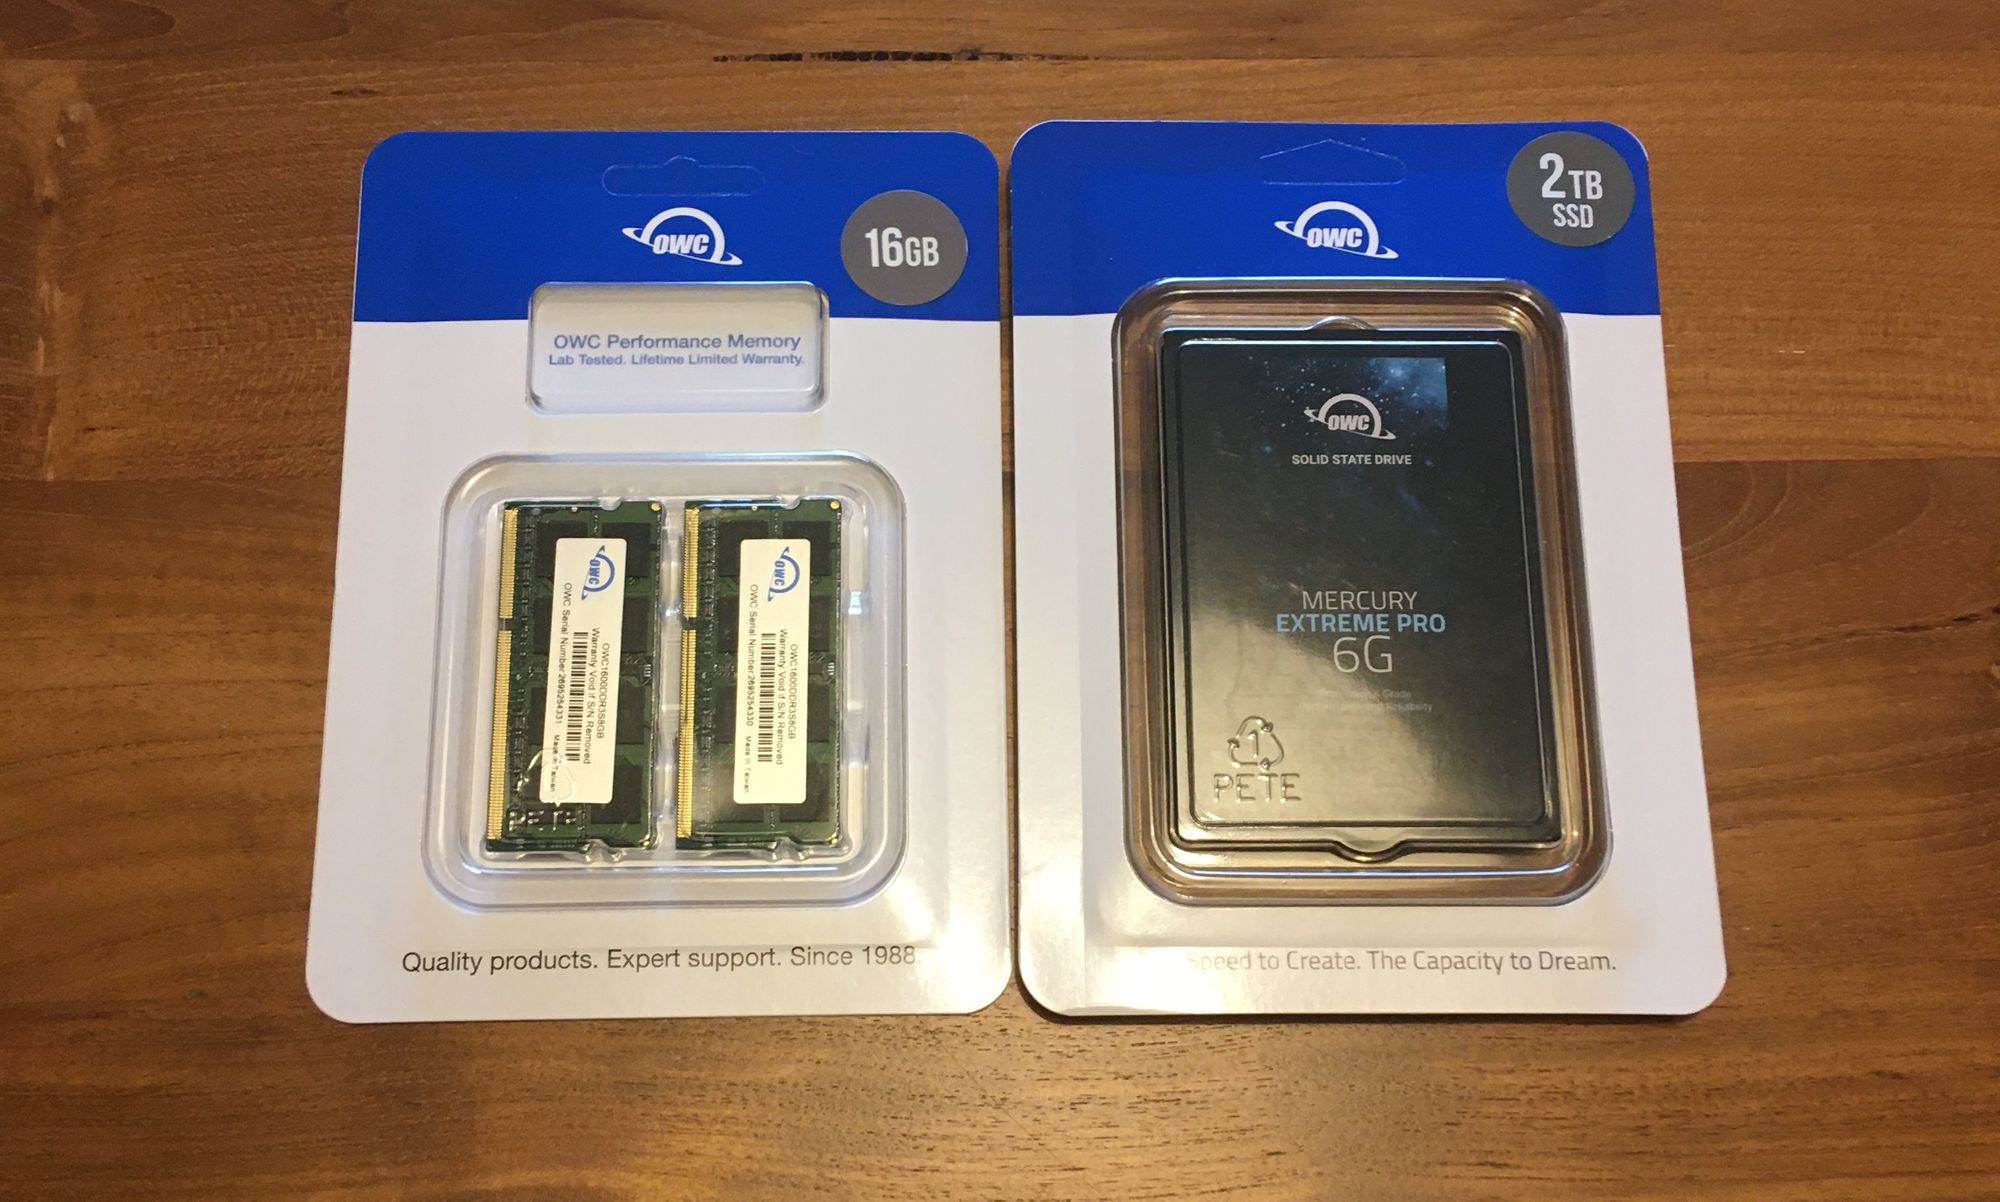 OWC 2TB Mercury Extreme Pro 6G SSD, 16GB 1600DDR3 RAM